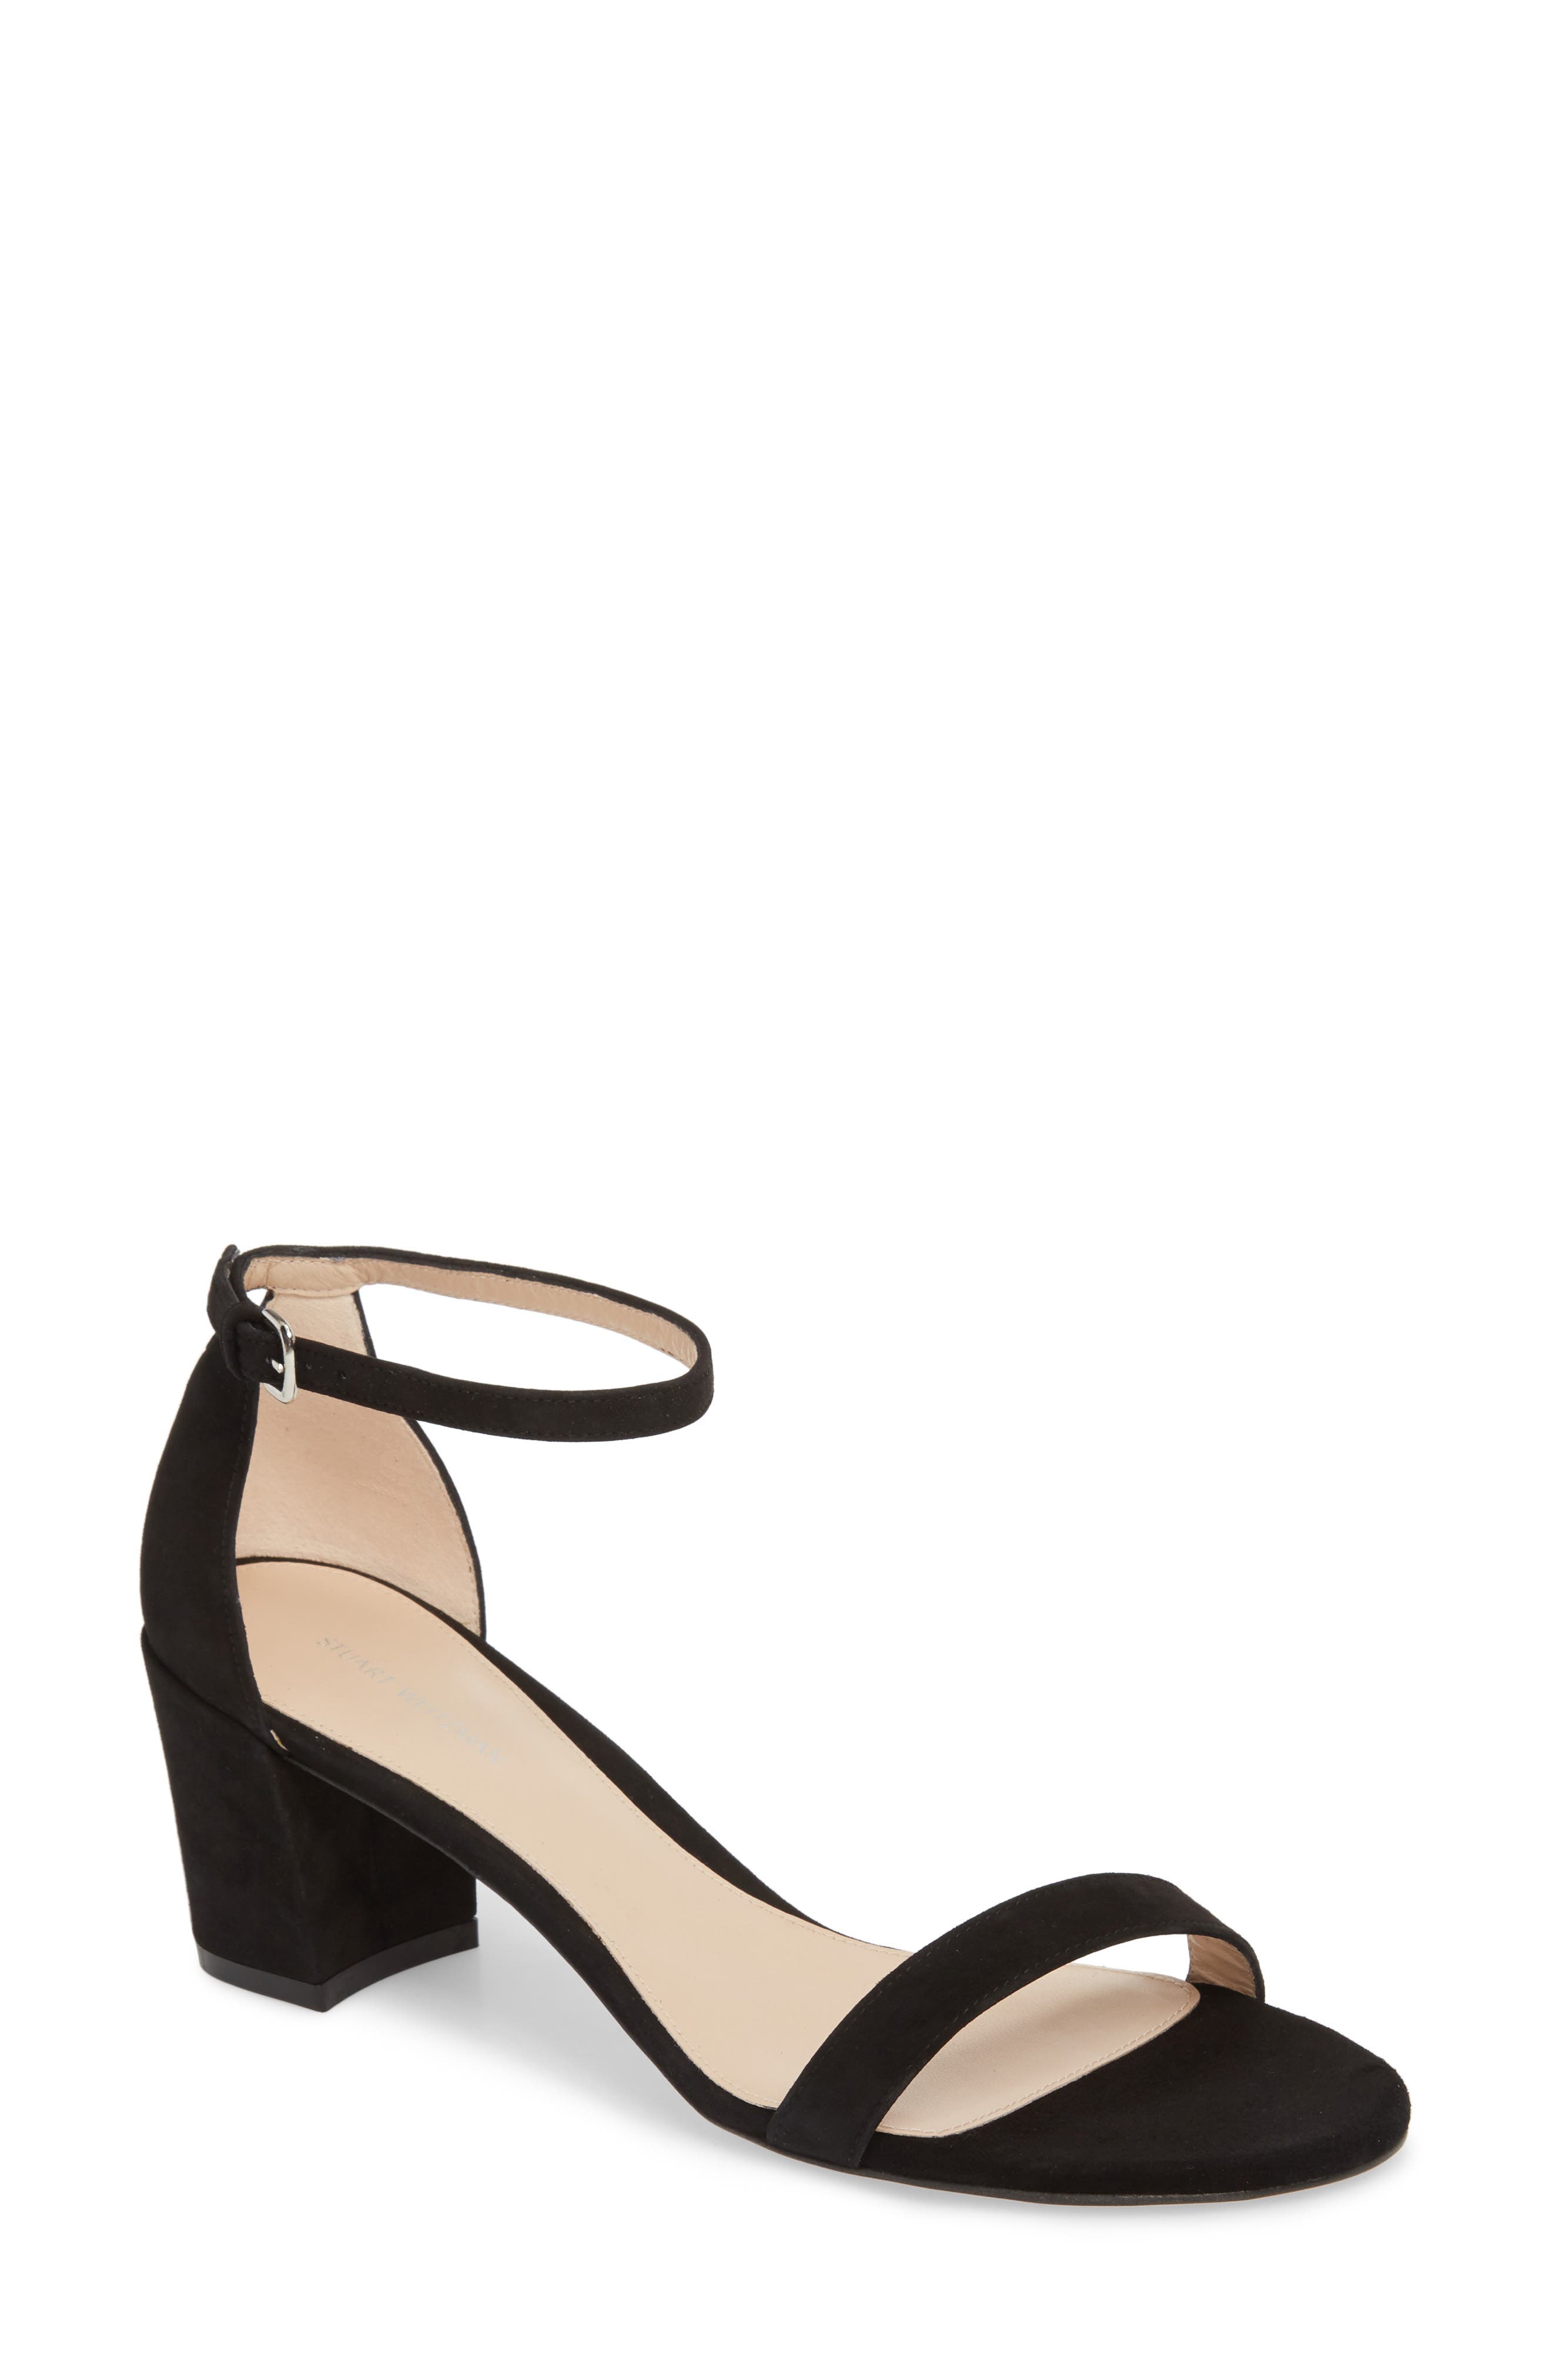 simple black strap heels